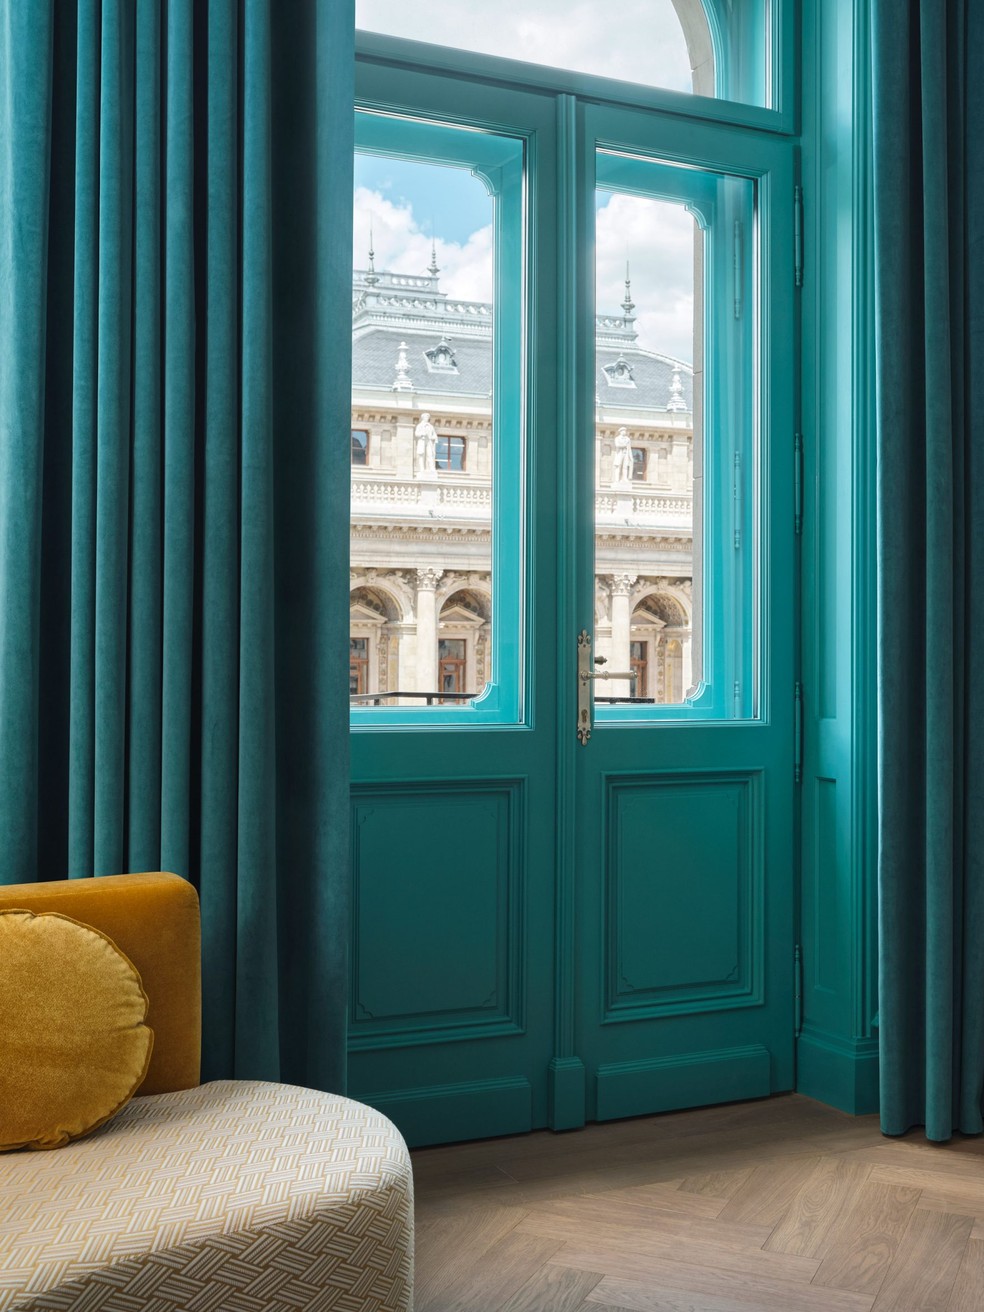 Azul turquesa é um dos destaques na decoração do hotel, que pode ser incorporado para as transformações caseiras — Foto: Divulgação/Cortesia W Budapest